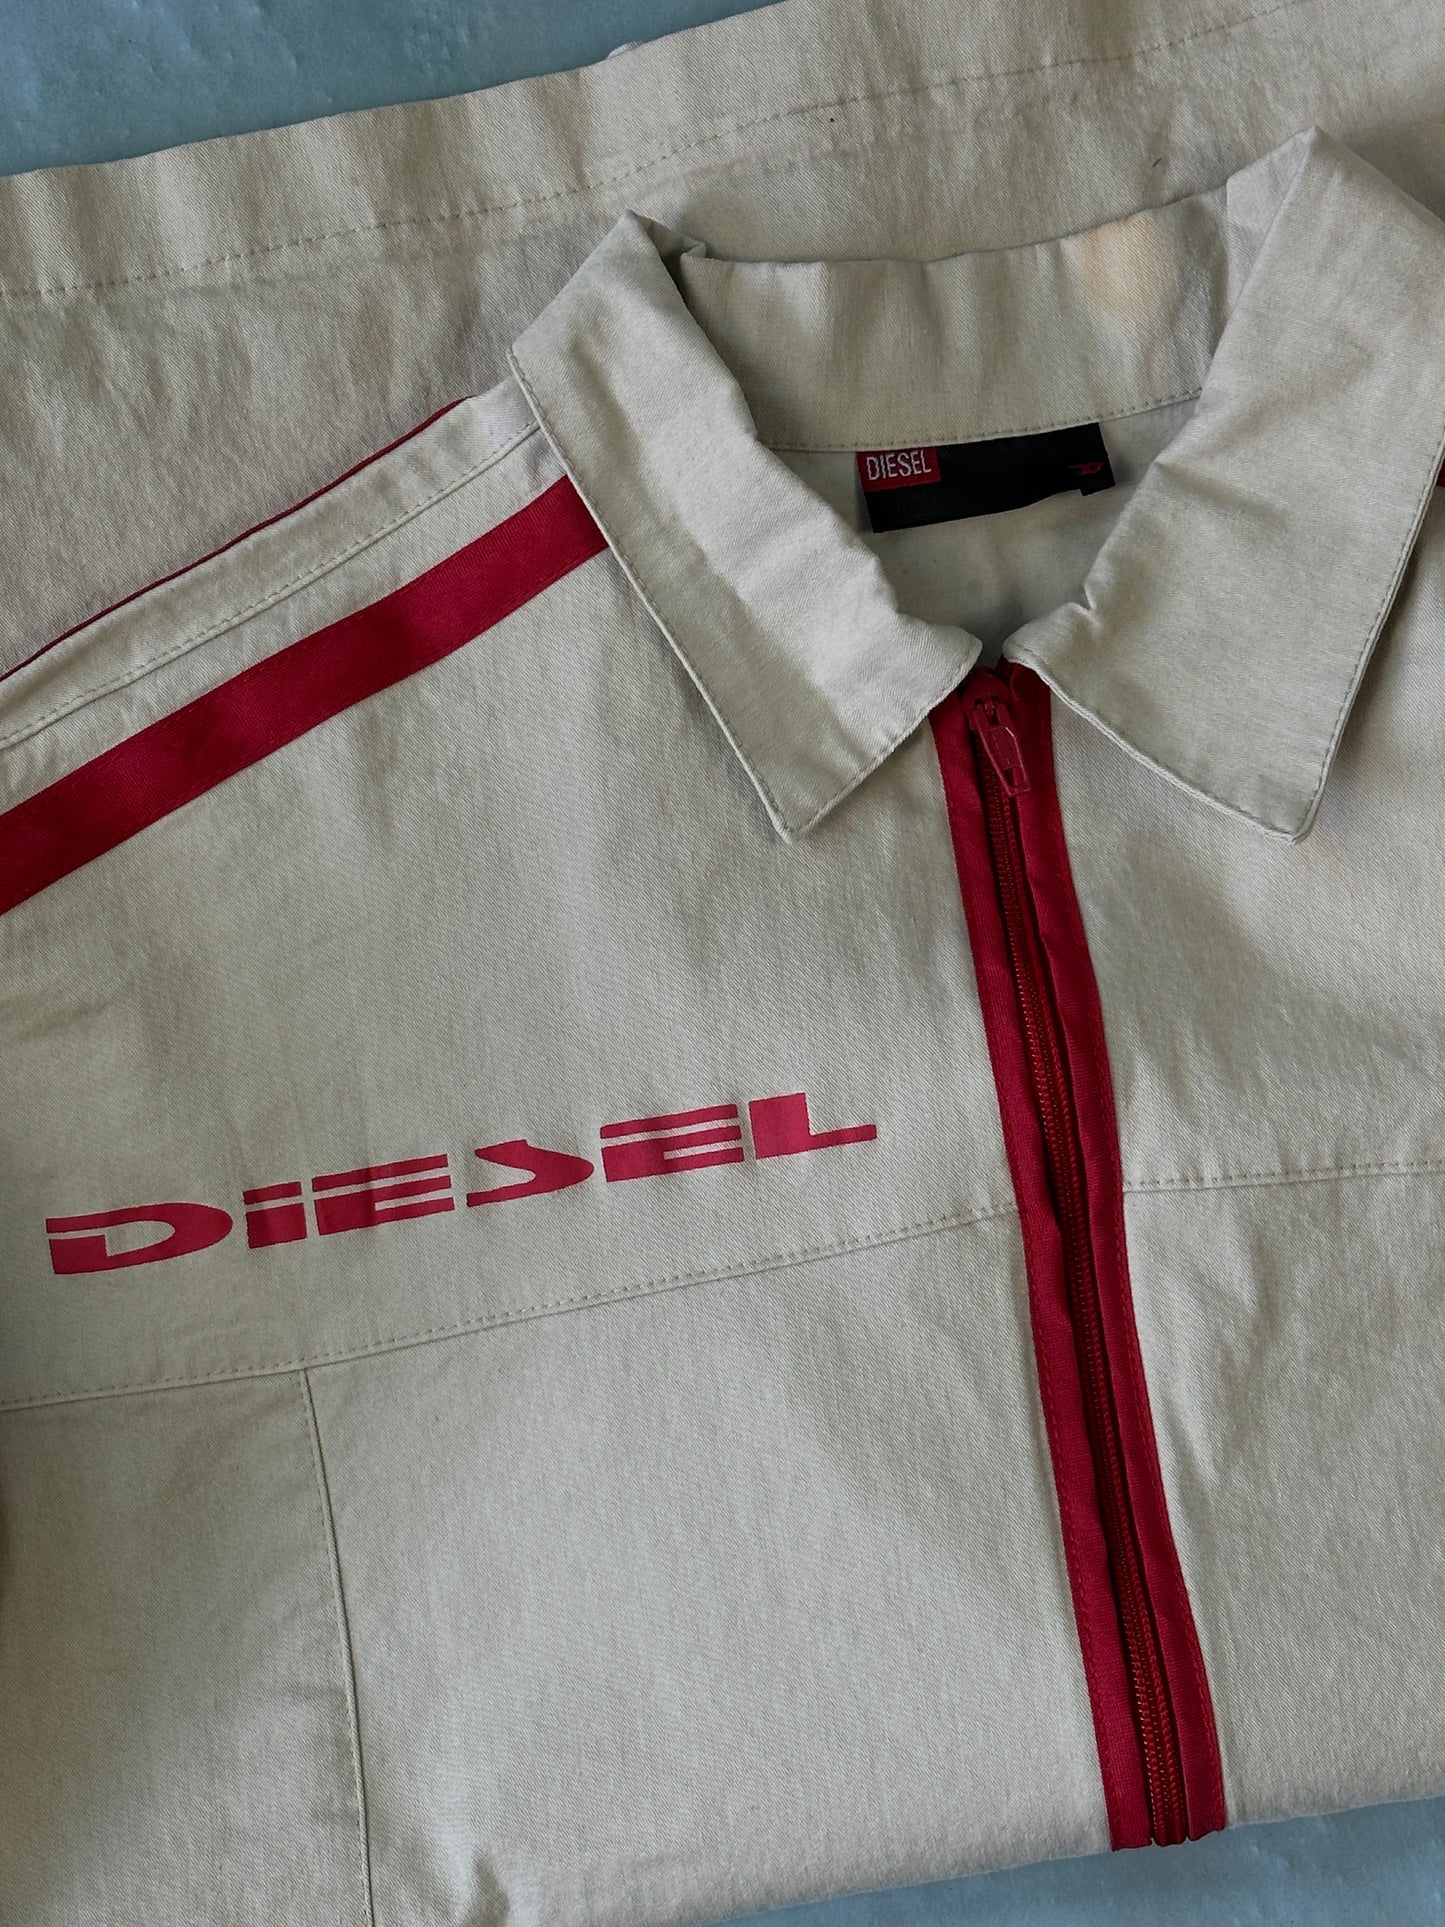 Camisa Zip Diesel Vintage - M